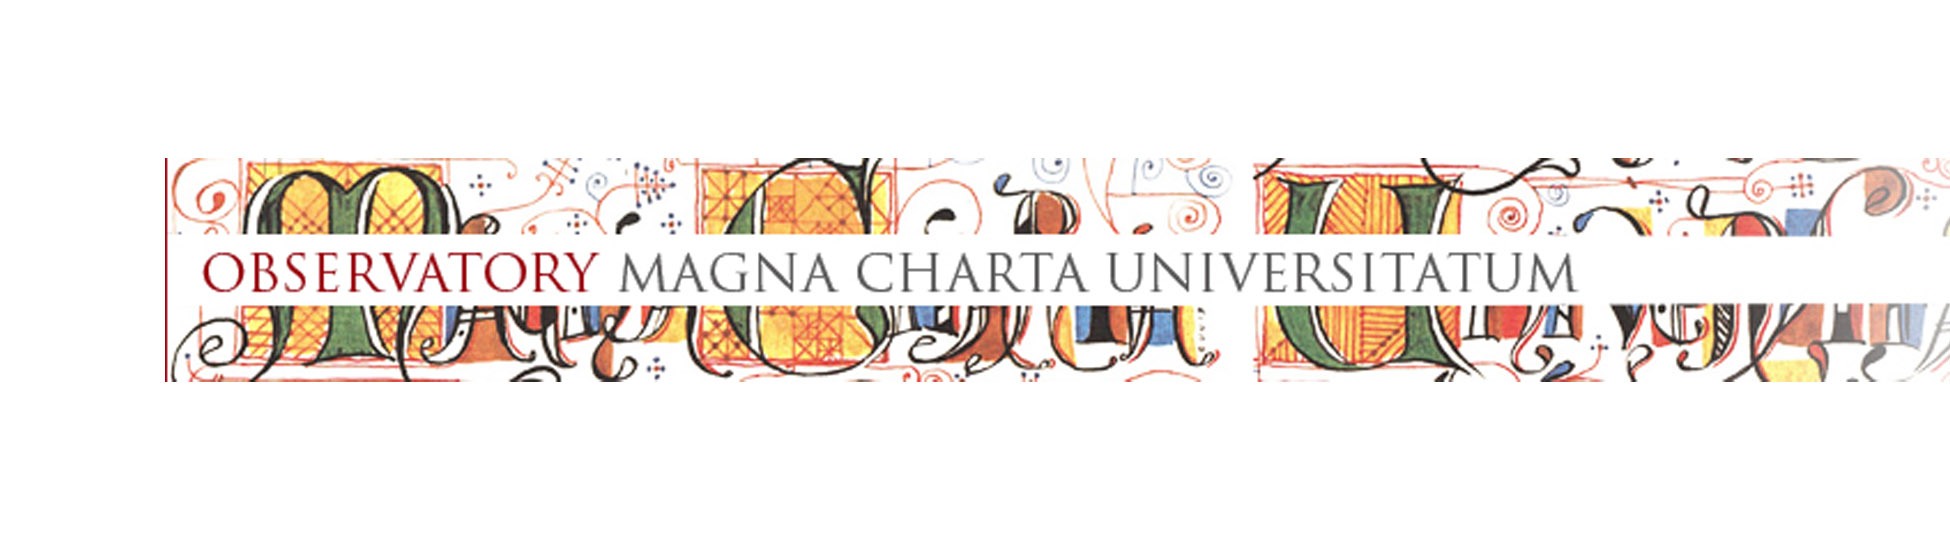 Aграрният университет – Пловдив е одобрен да подпише Magna Charta Universitatum